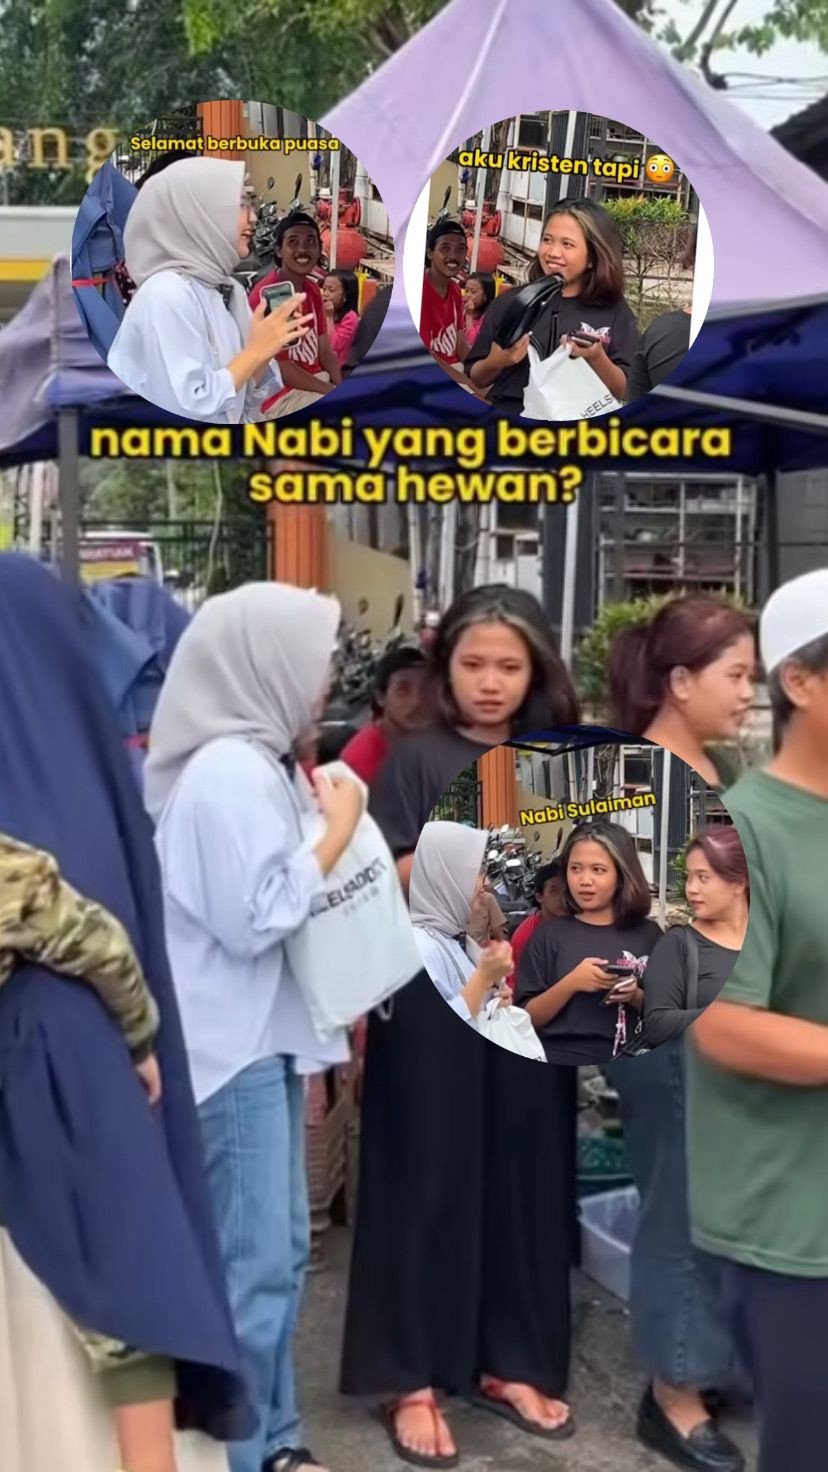 Video Viral: Wanita Non-Muslim Menjawab pertanyaan dengan Tepat, “Nabi apa yang Berbicara dengan Hewan” saat Antri Takjil